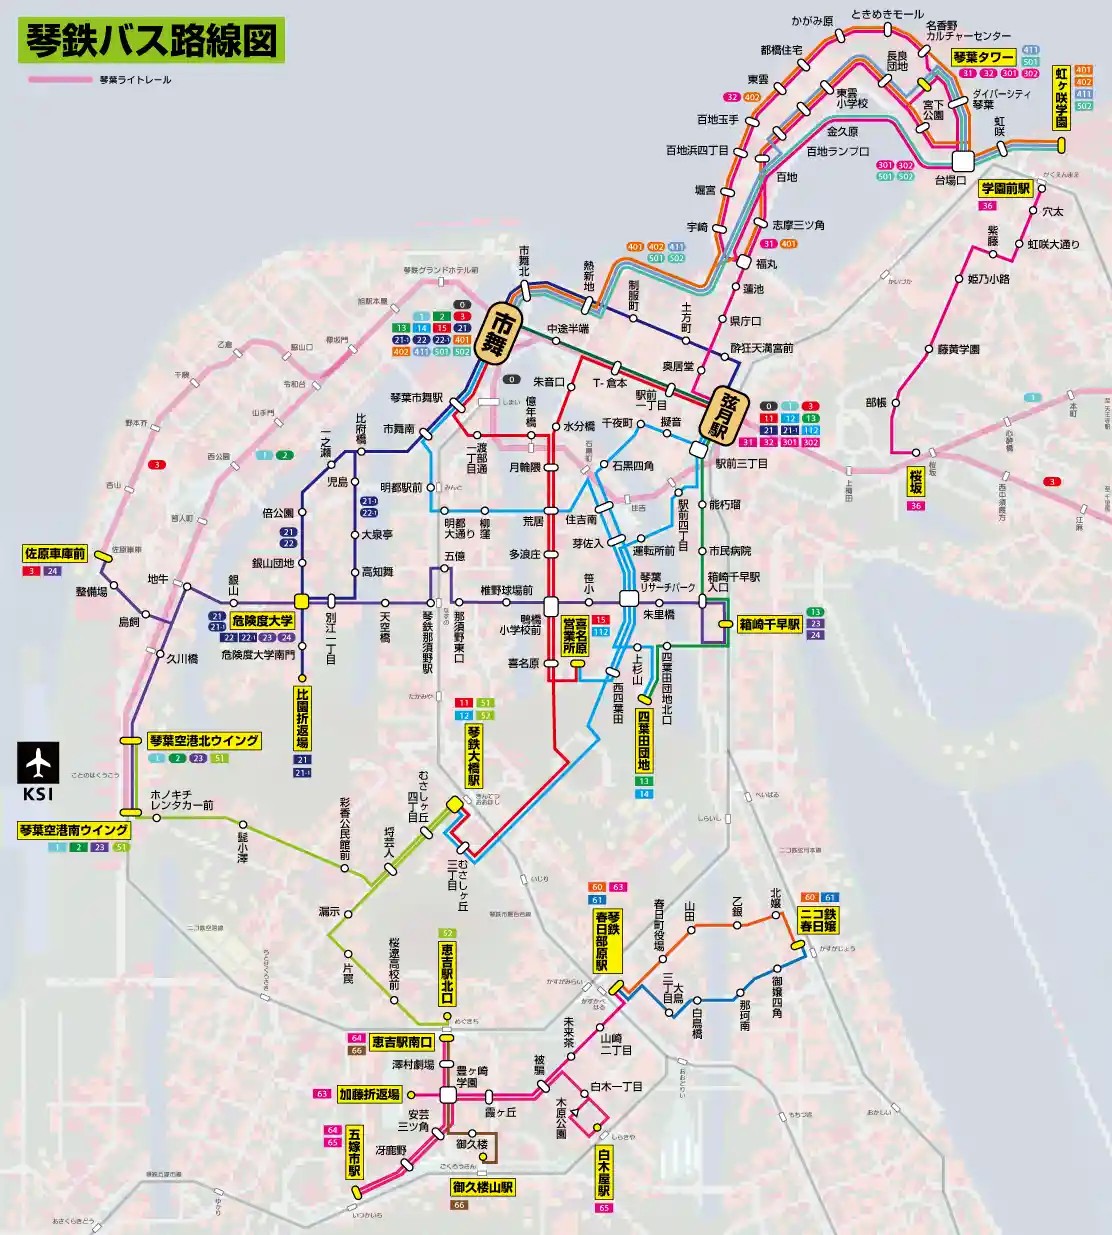 バス路線図13話wiki.png